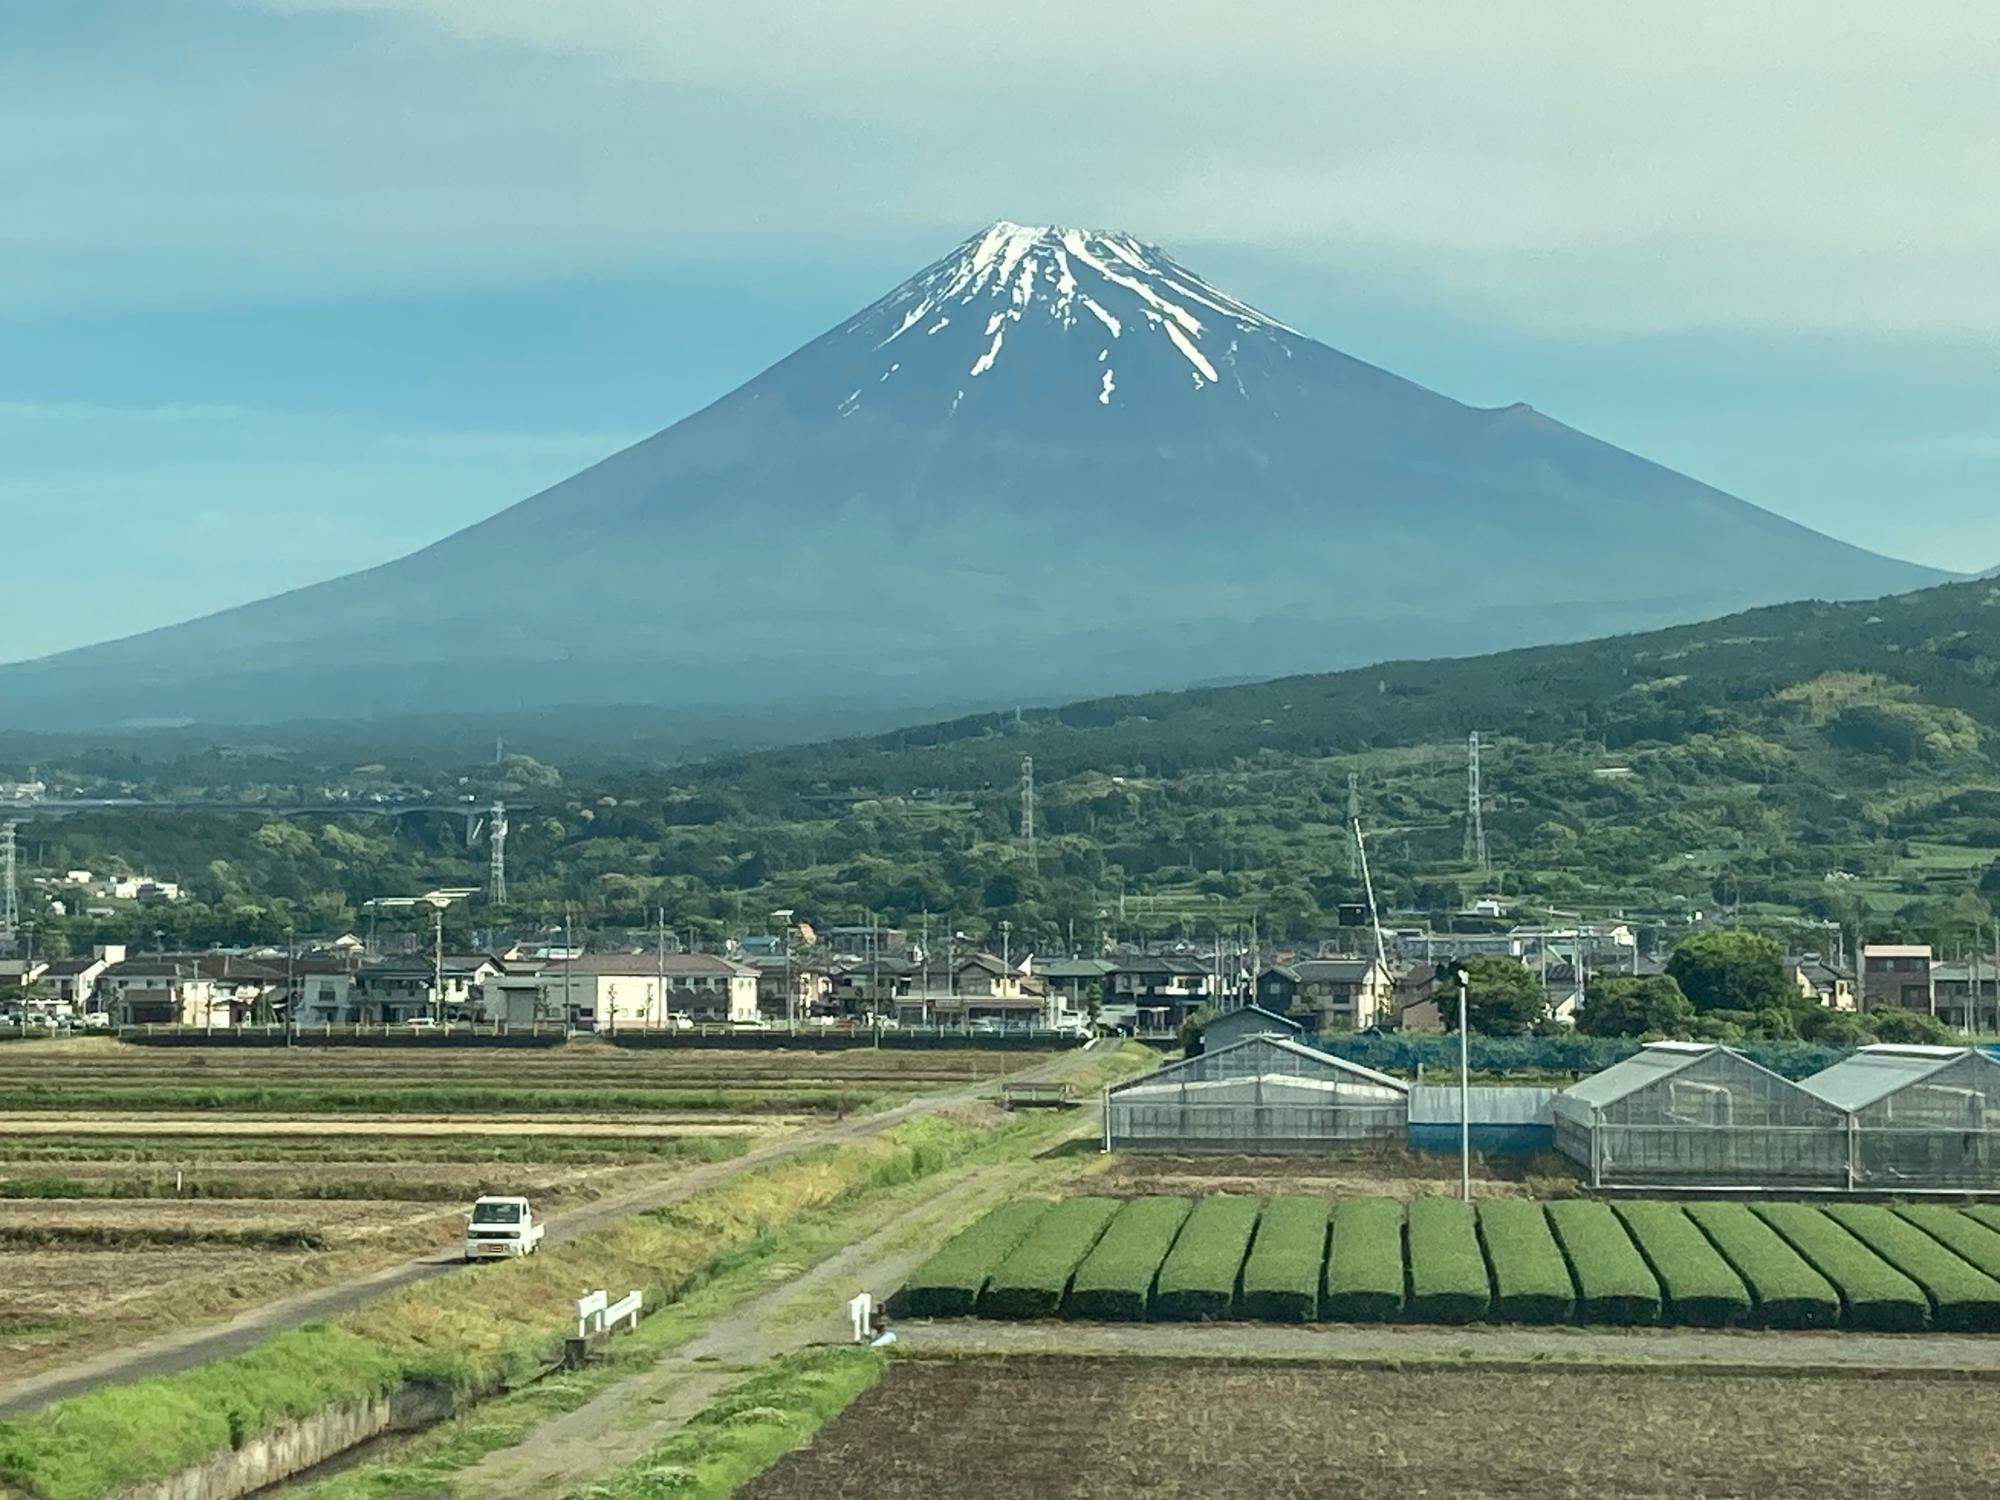 5月中旬の富士山と手前の茶畑のベストショット！茶畑の色を見ると新茶になる新芽は既に刈り取られた模様。新芽が出ている茶畑はもっと明るい黄緑色に見えます。